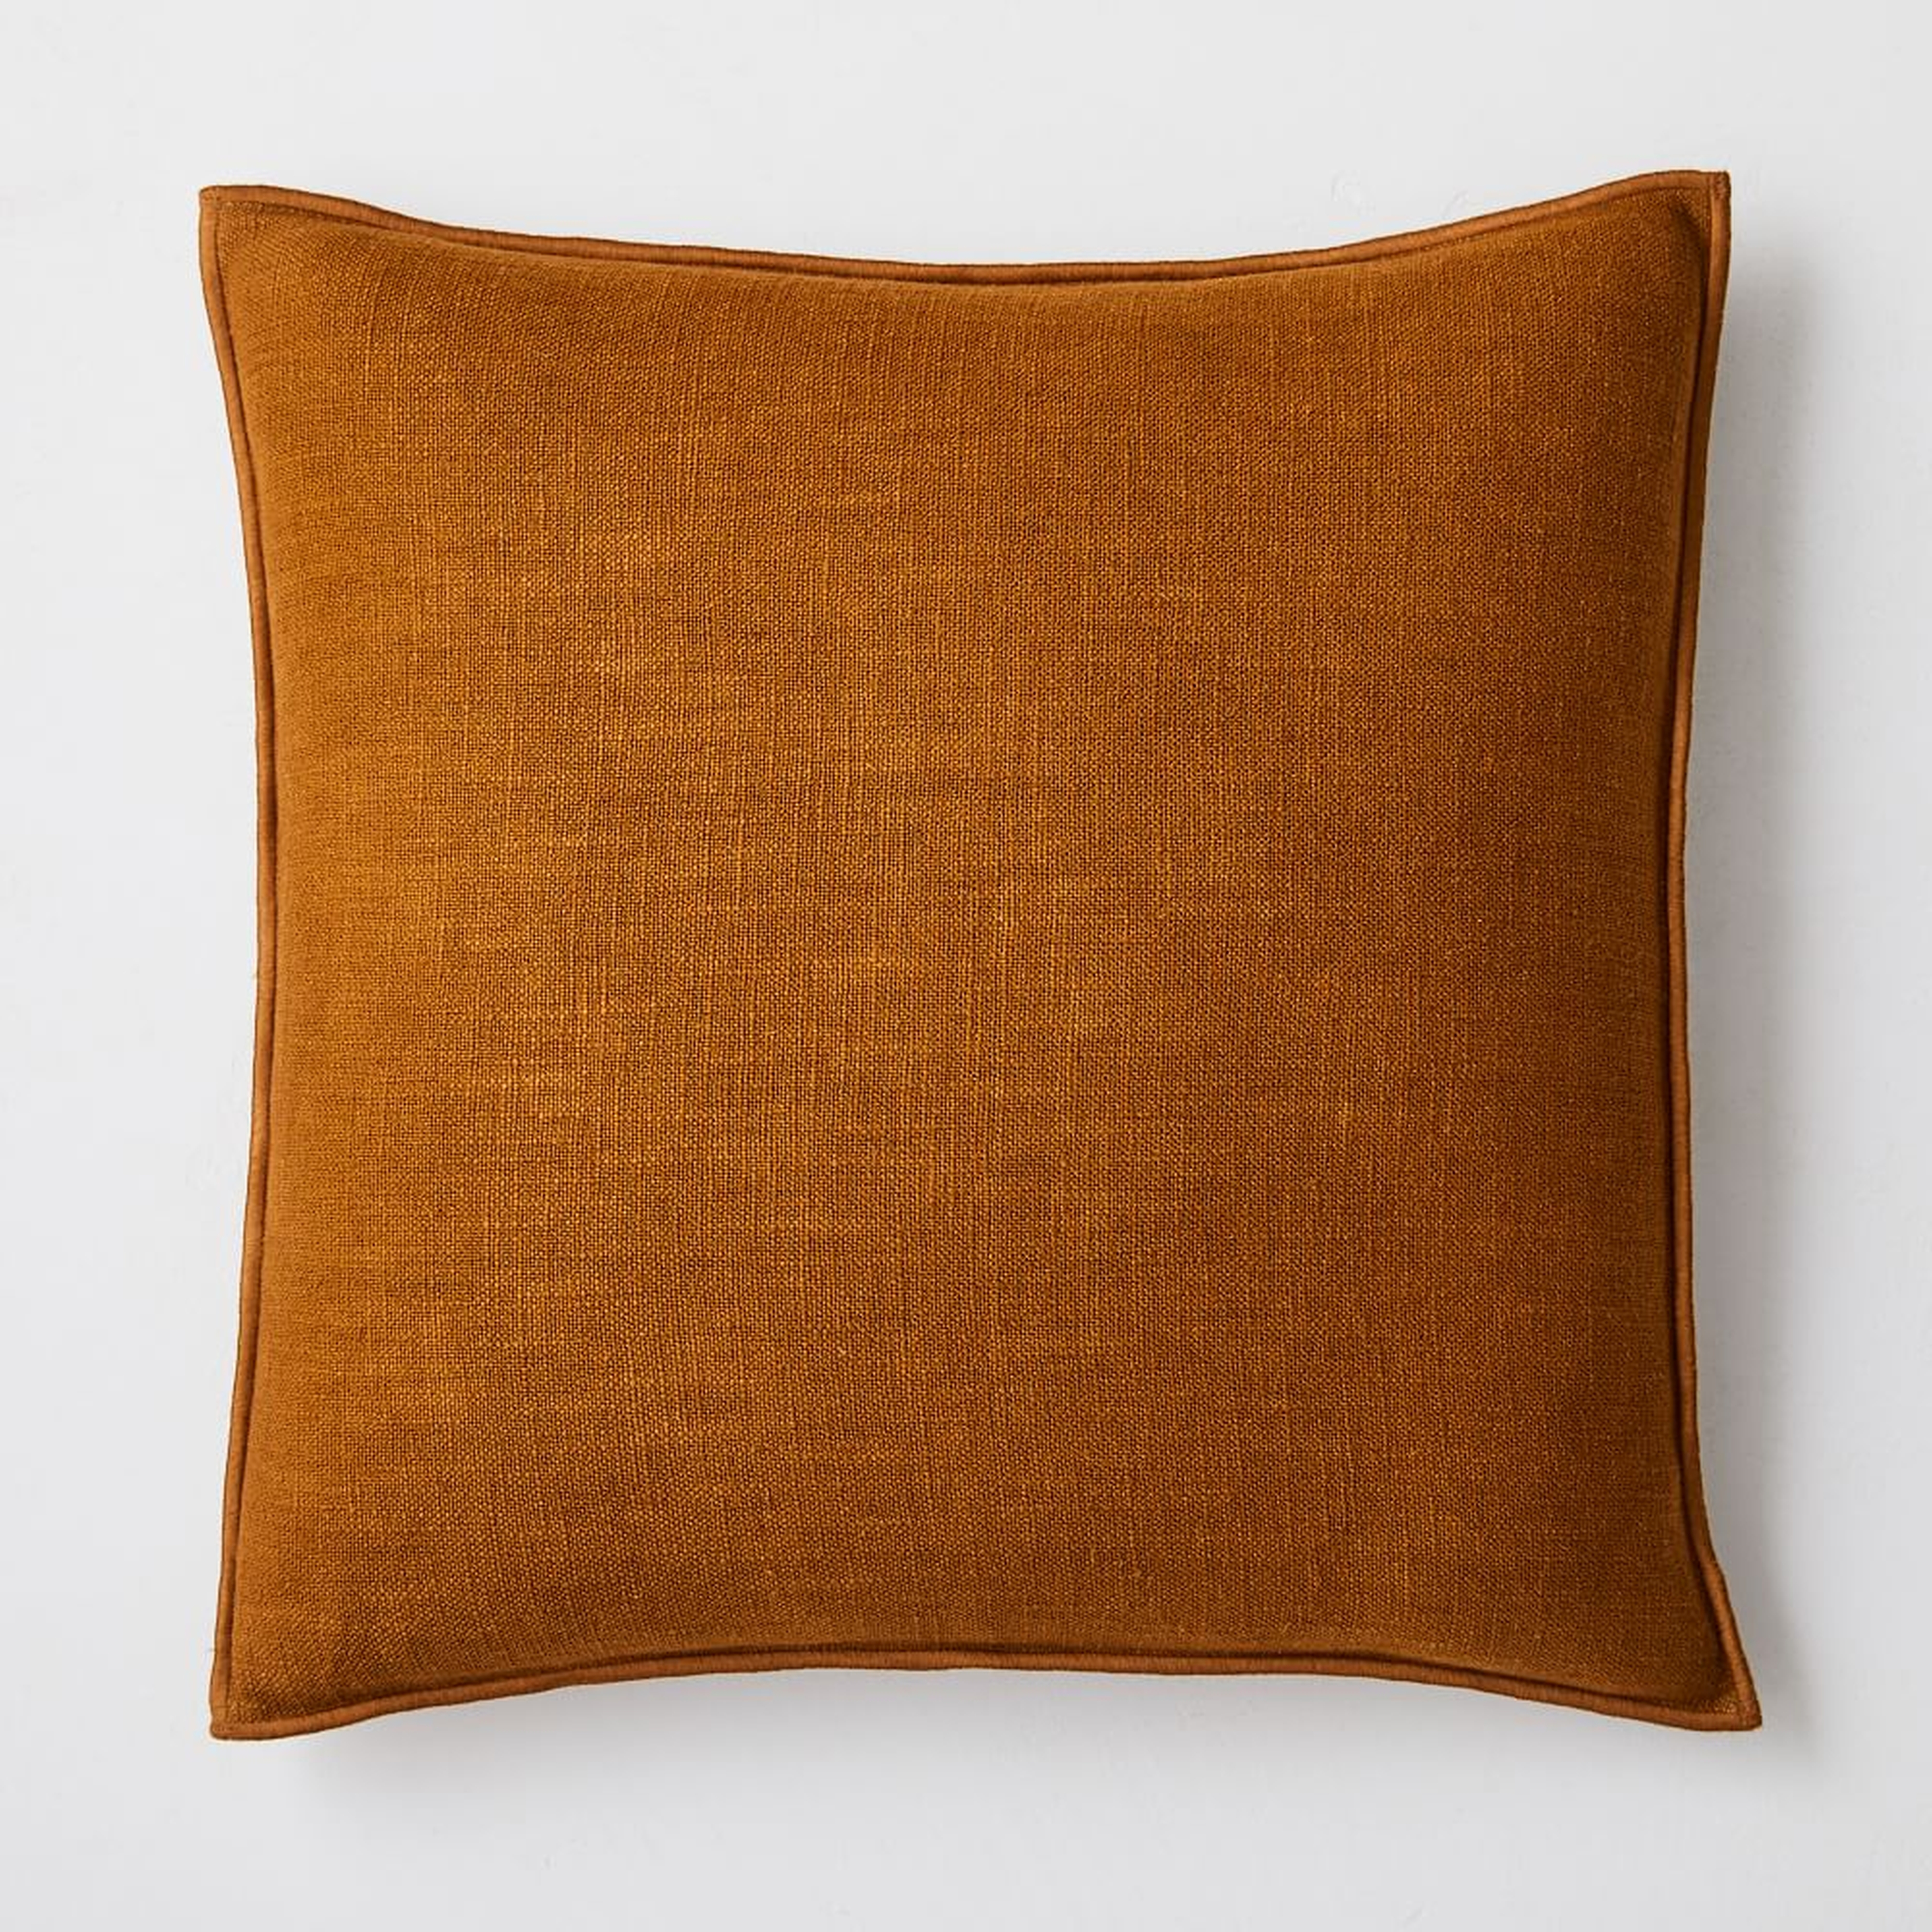 Classic Linen Pillow Cover, 20"x20", Golden Oak, Set of 2 - West Elm